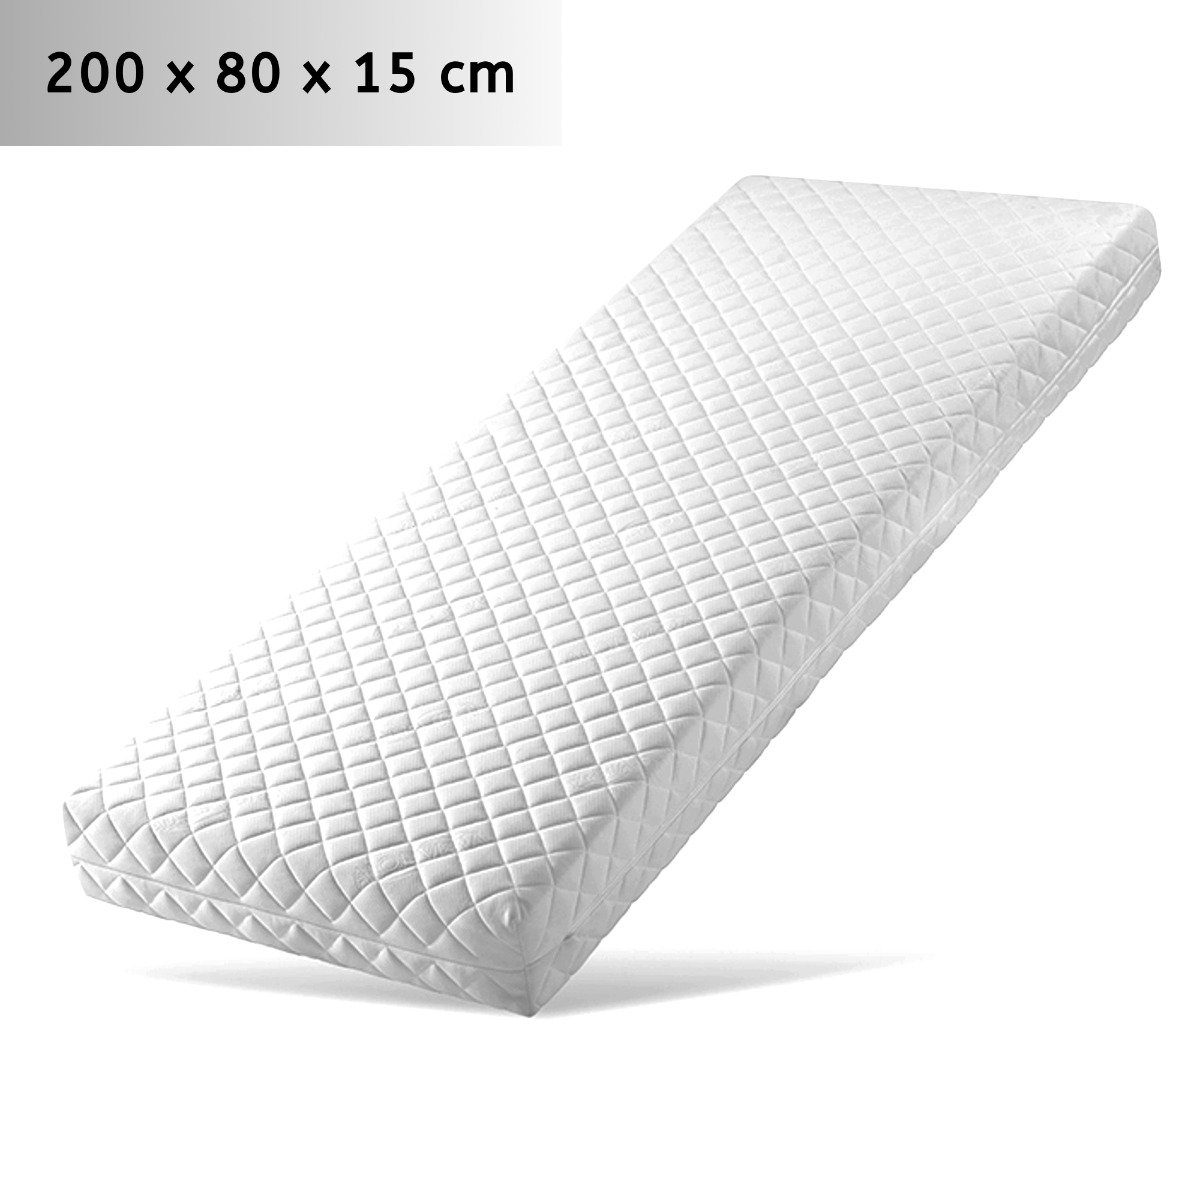 Komfortschaummatratze »Matratze Komfort Plus 7 Zonen RG 30 H 3 200 x 80 x  15 cm«, Stillerbursch, 15 cm hoch online kaufen | OTTO